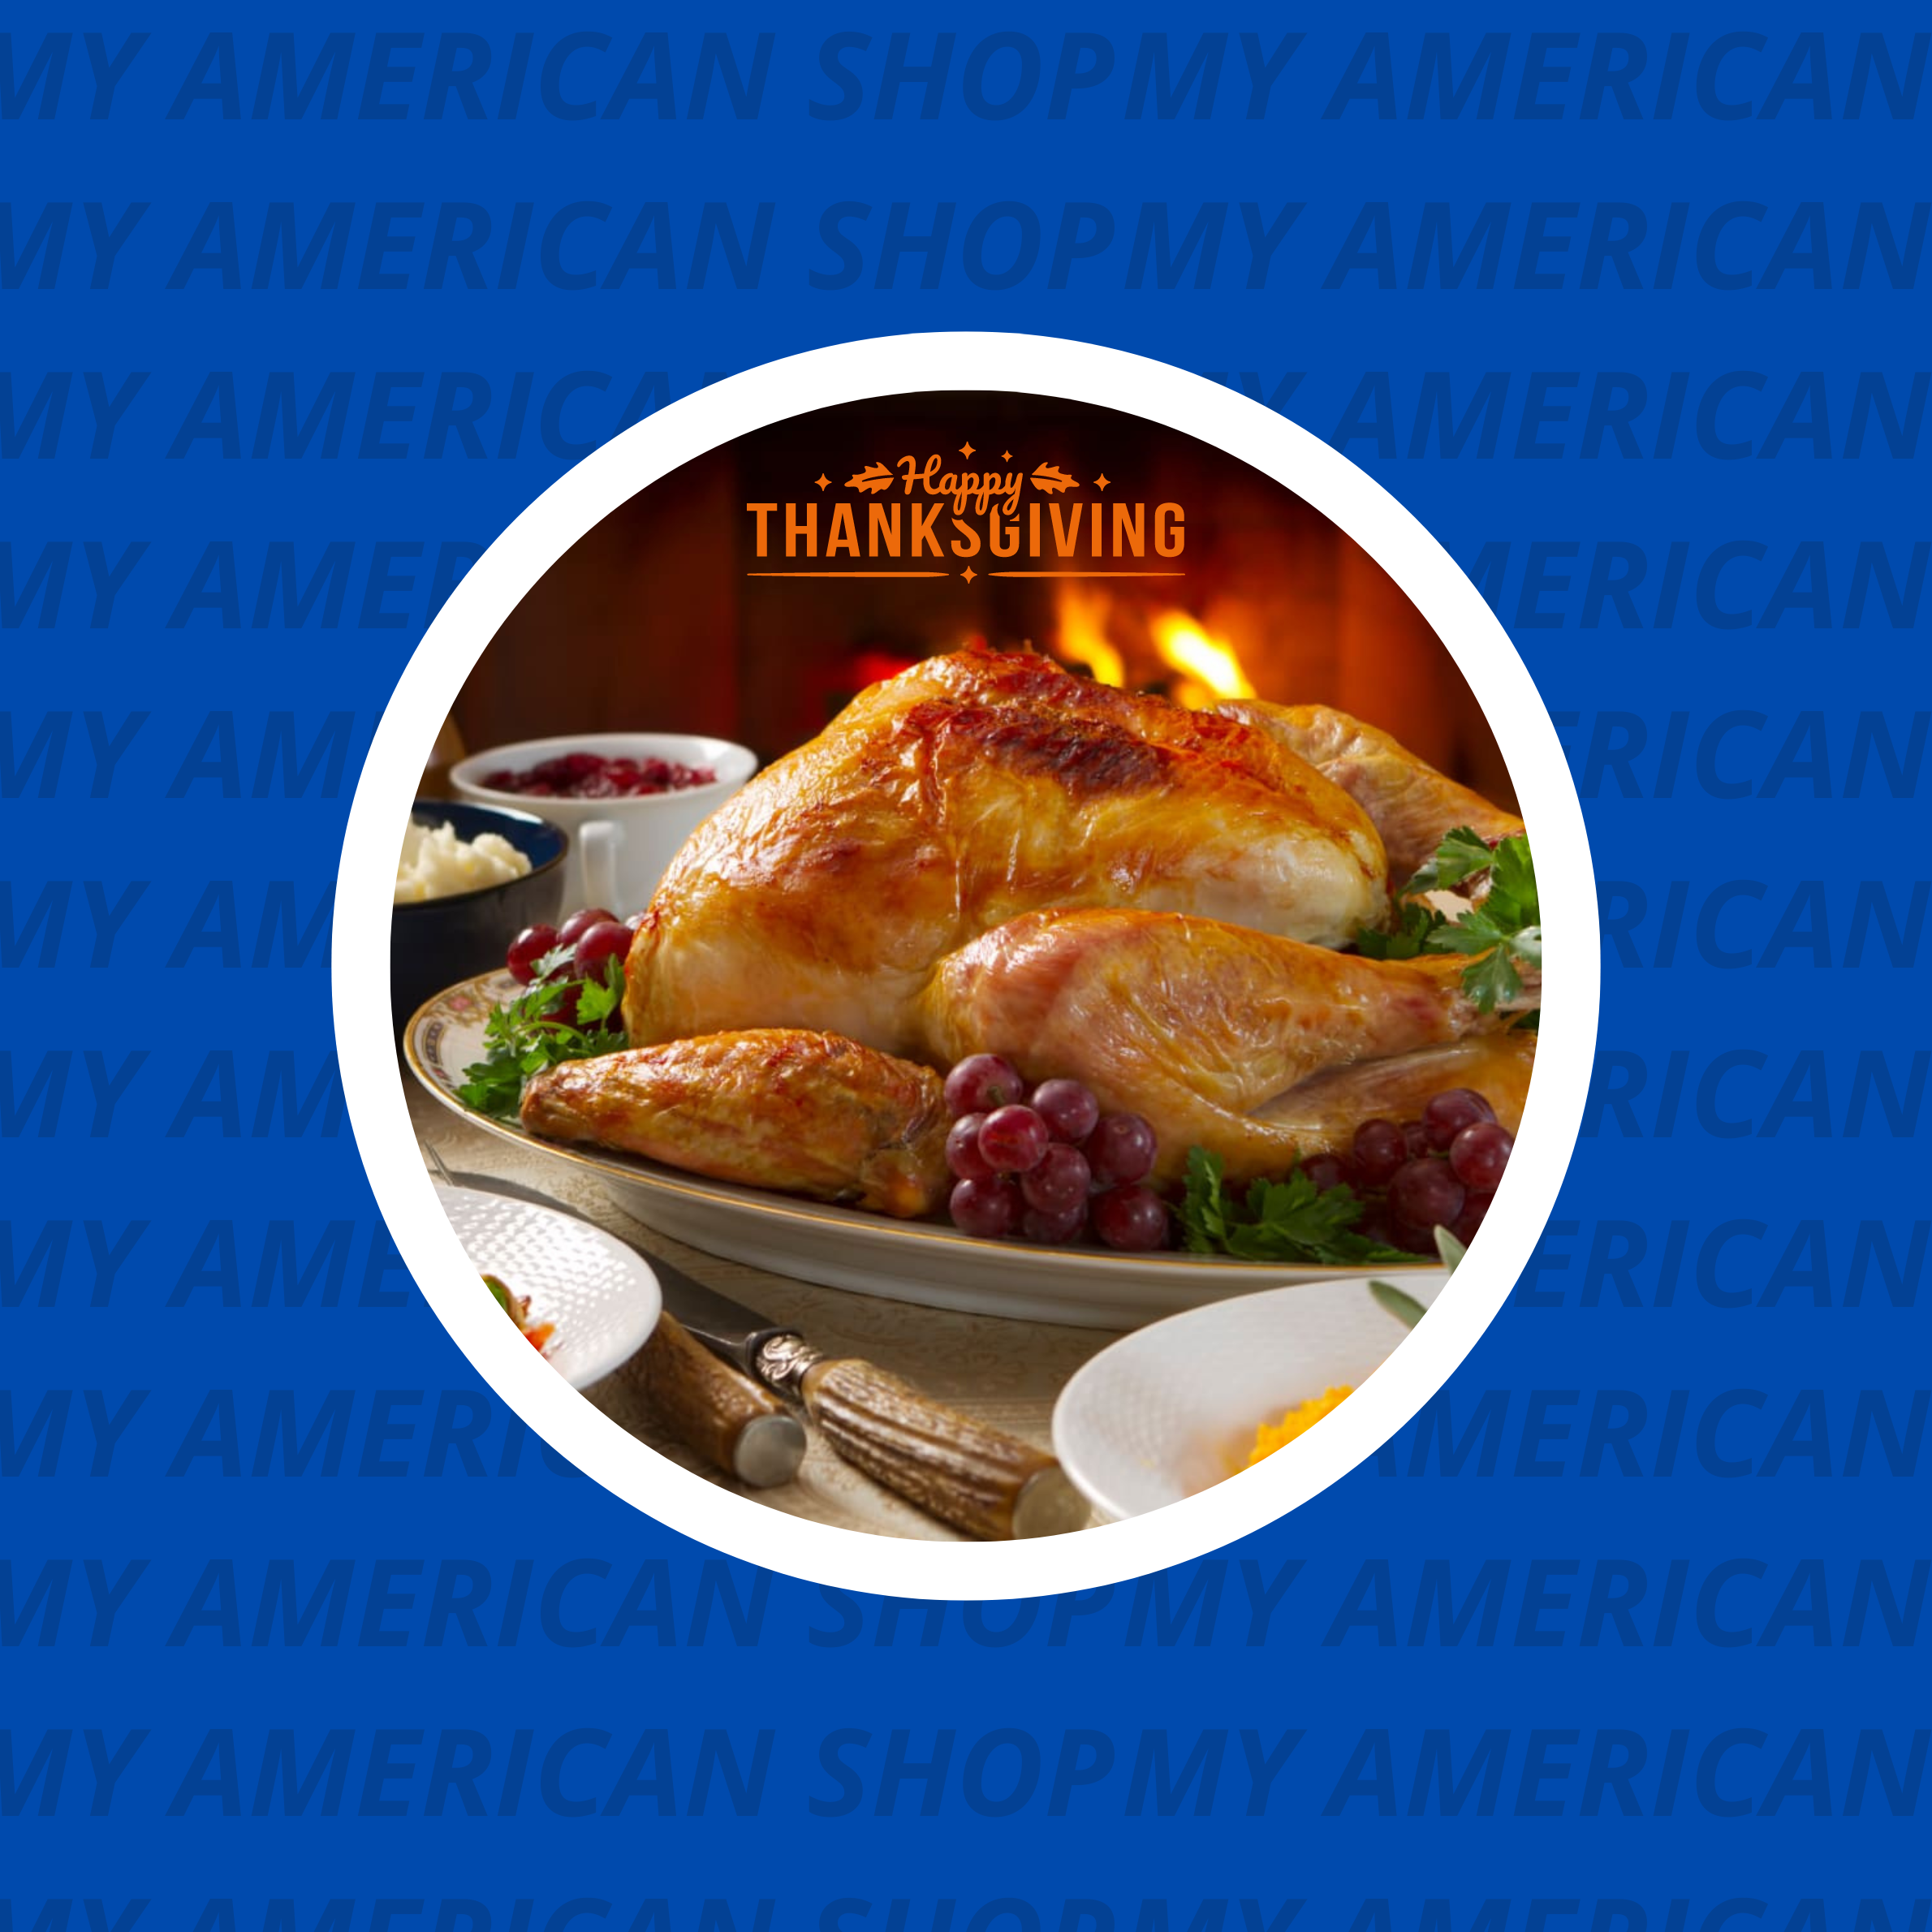 La fête des Américains où tout le monde se rassemble avant Noël : Thanksgiving